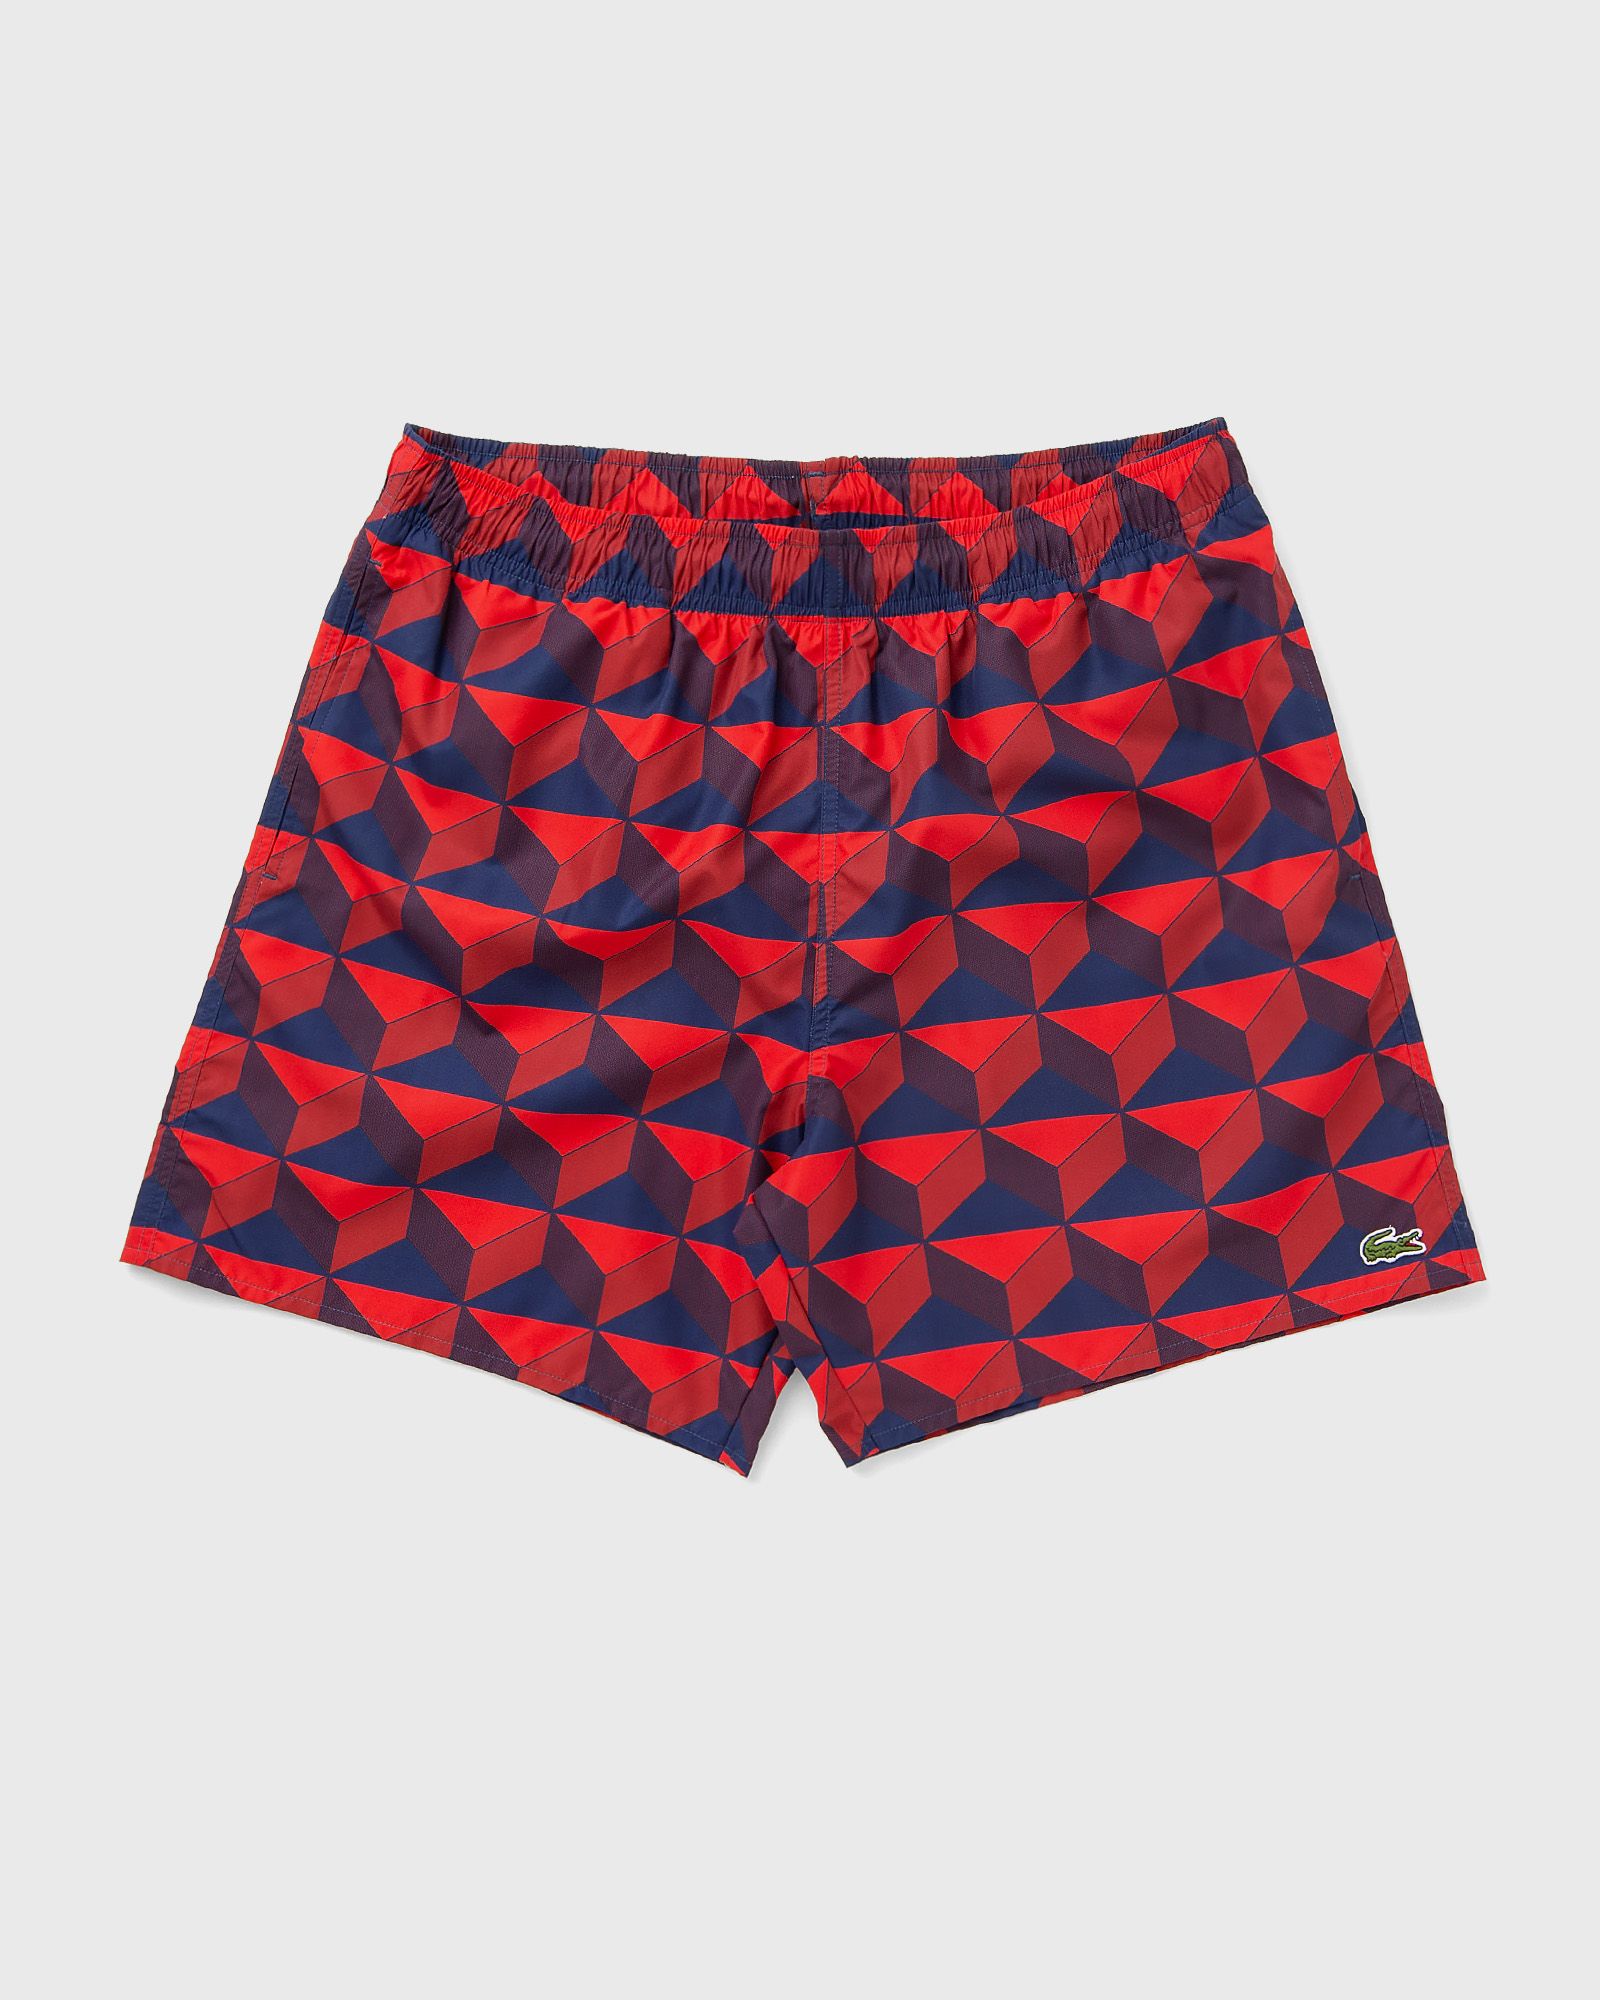 Lacoste - patterned swim trunks men swimwear blue|red in größe:xl